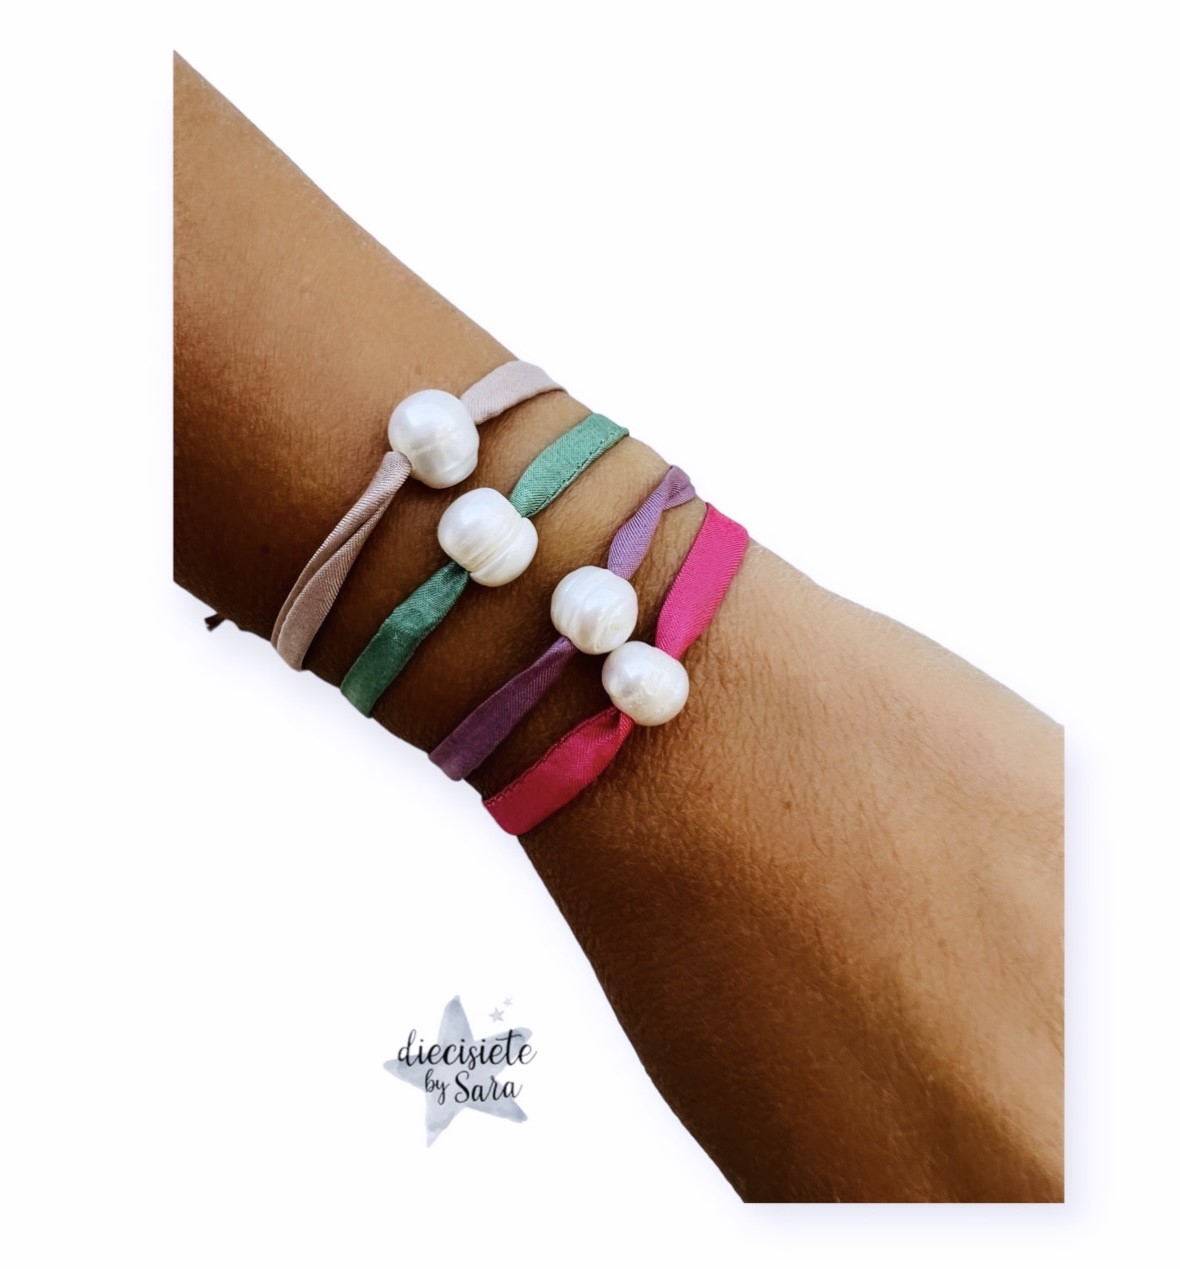 joyeria-acebo-diecisiete-by-sara-pulsera-hilo-perlas